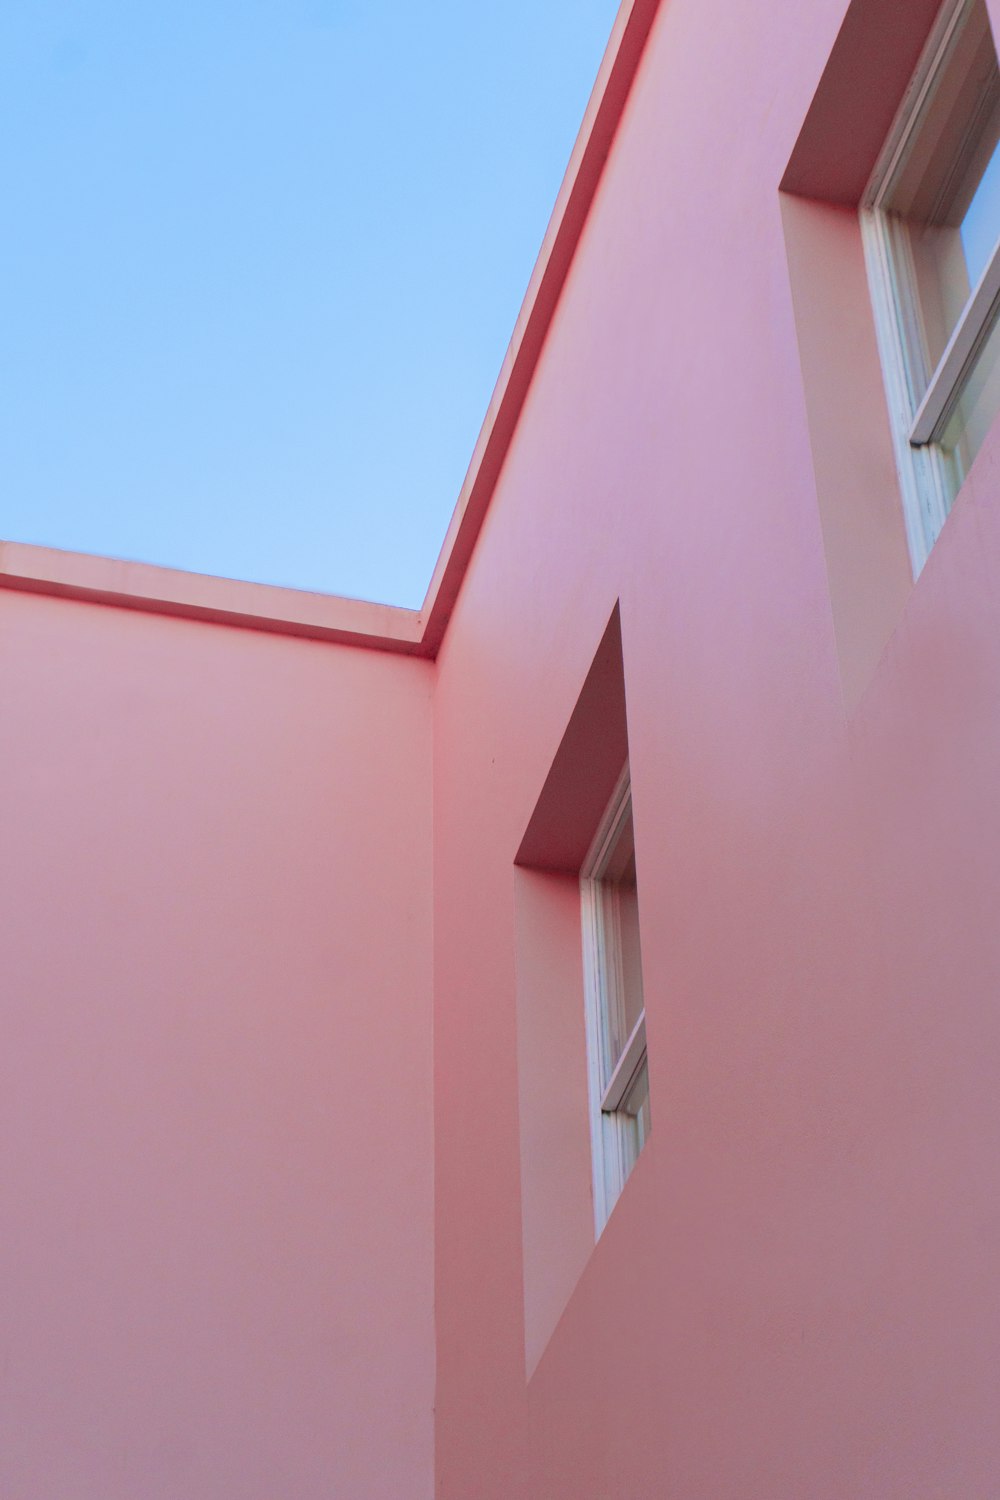 낮 동안 푸른 하늘 아래 분홍색 콘크리트 건물